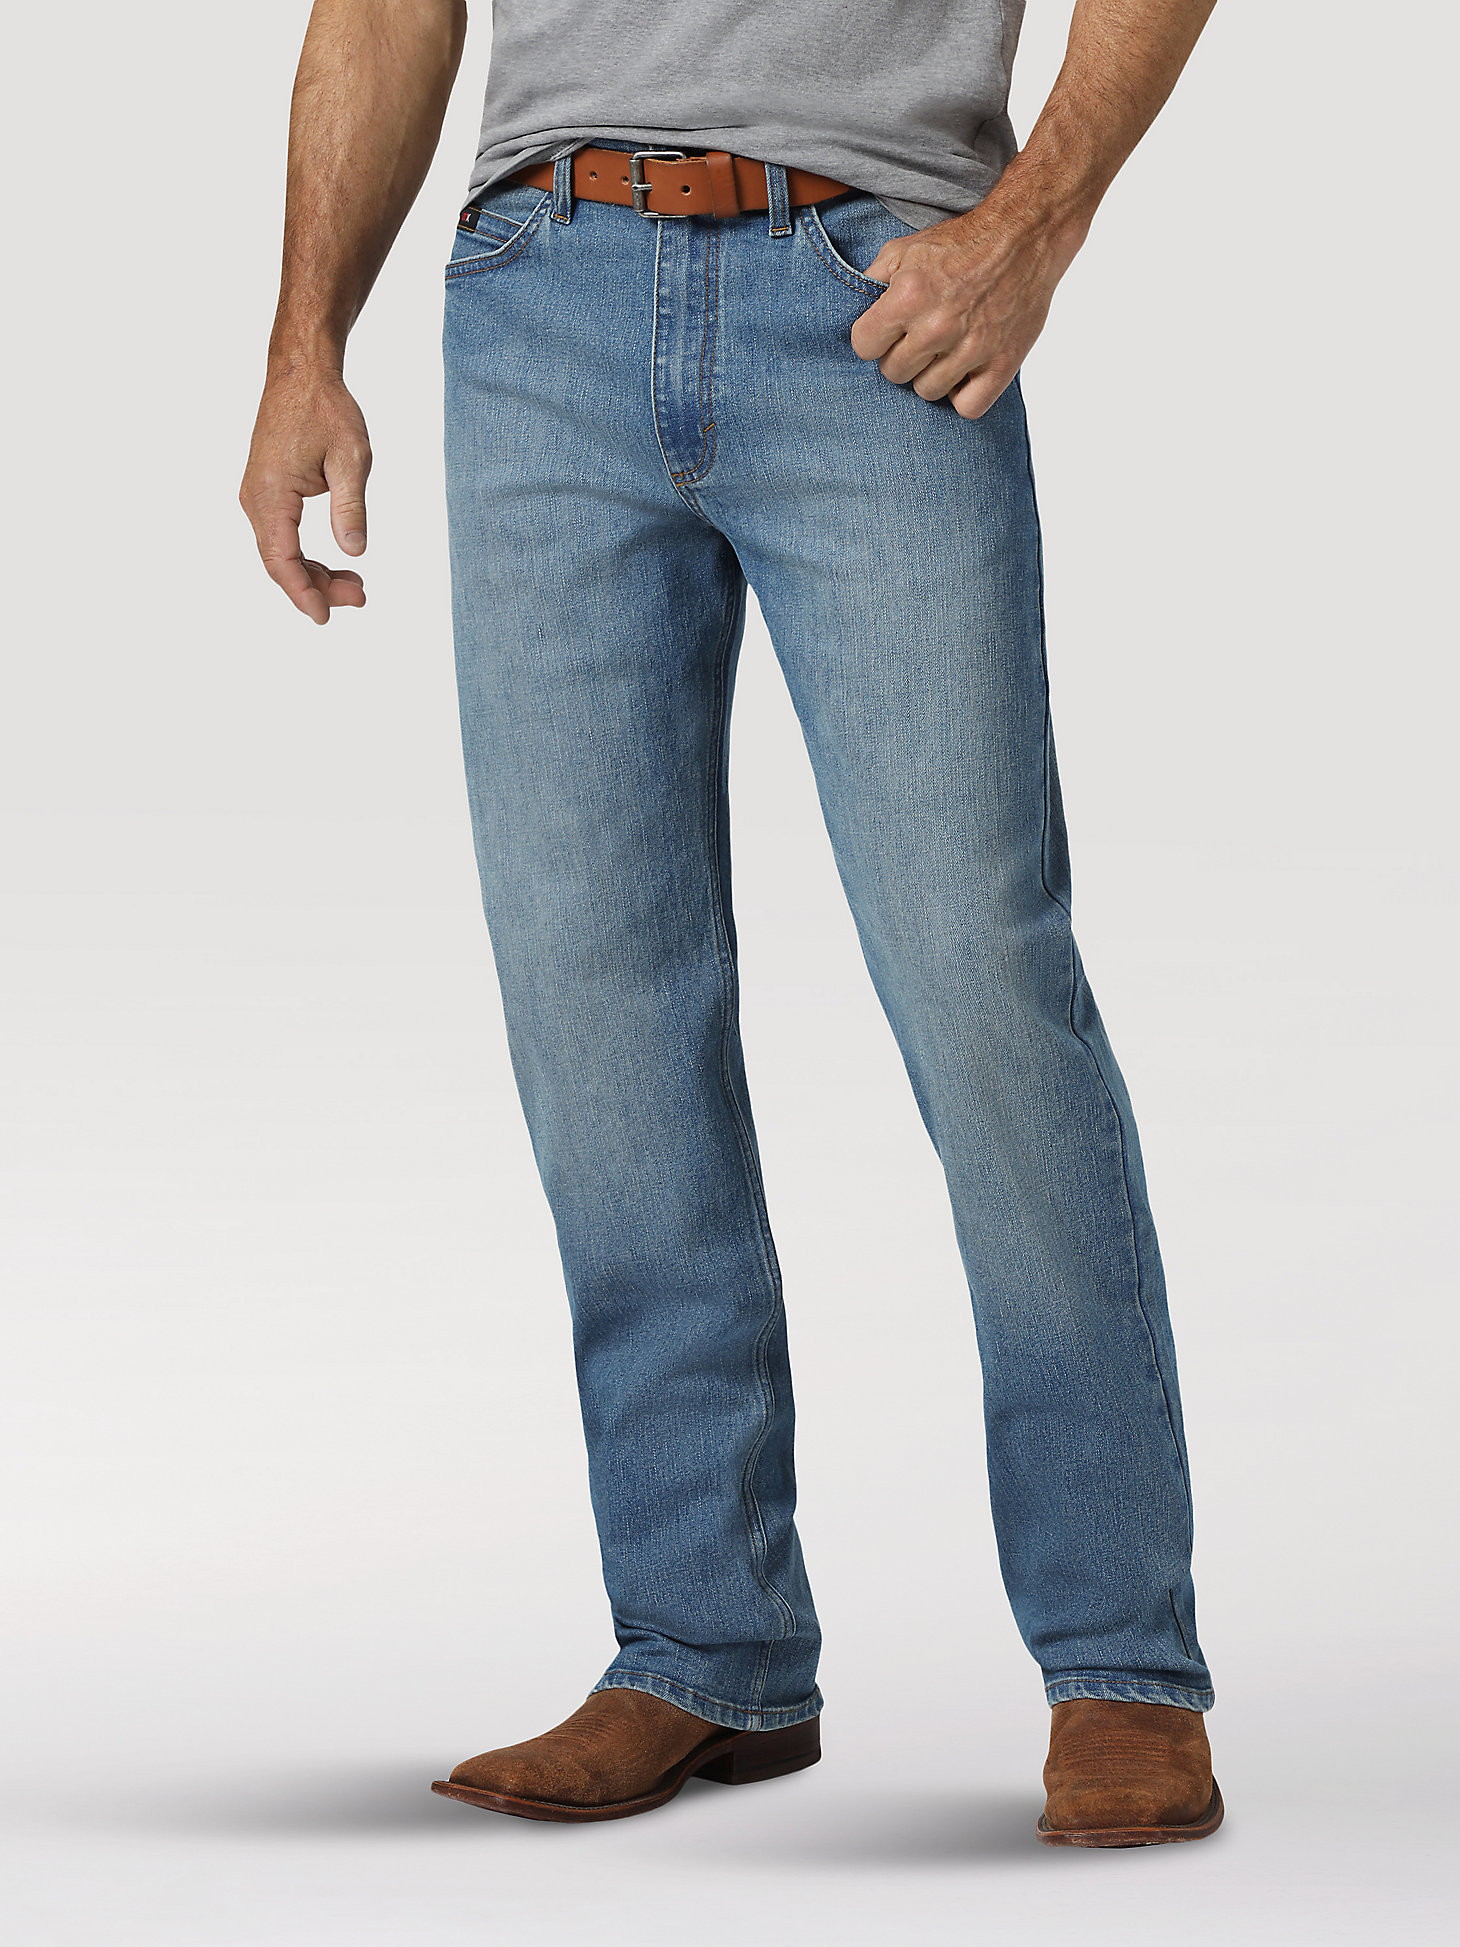 Arriba 42+ imagen men’s wrangler 20x jeans